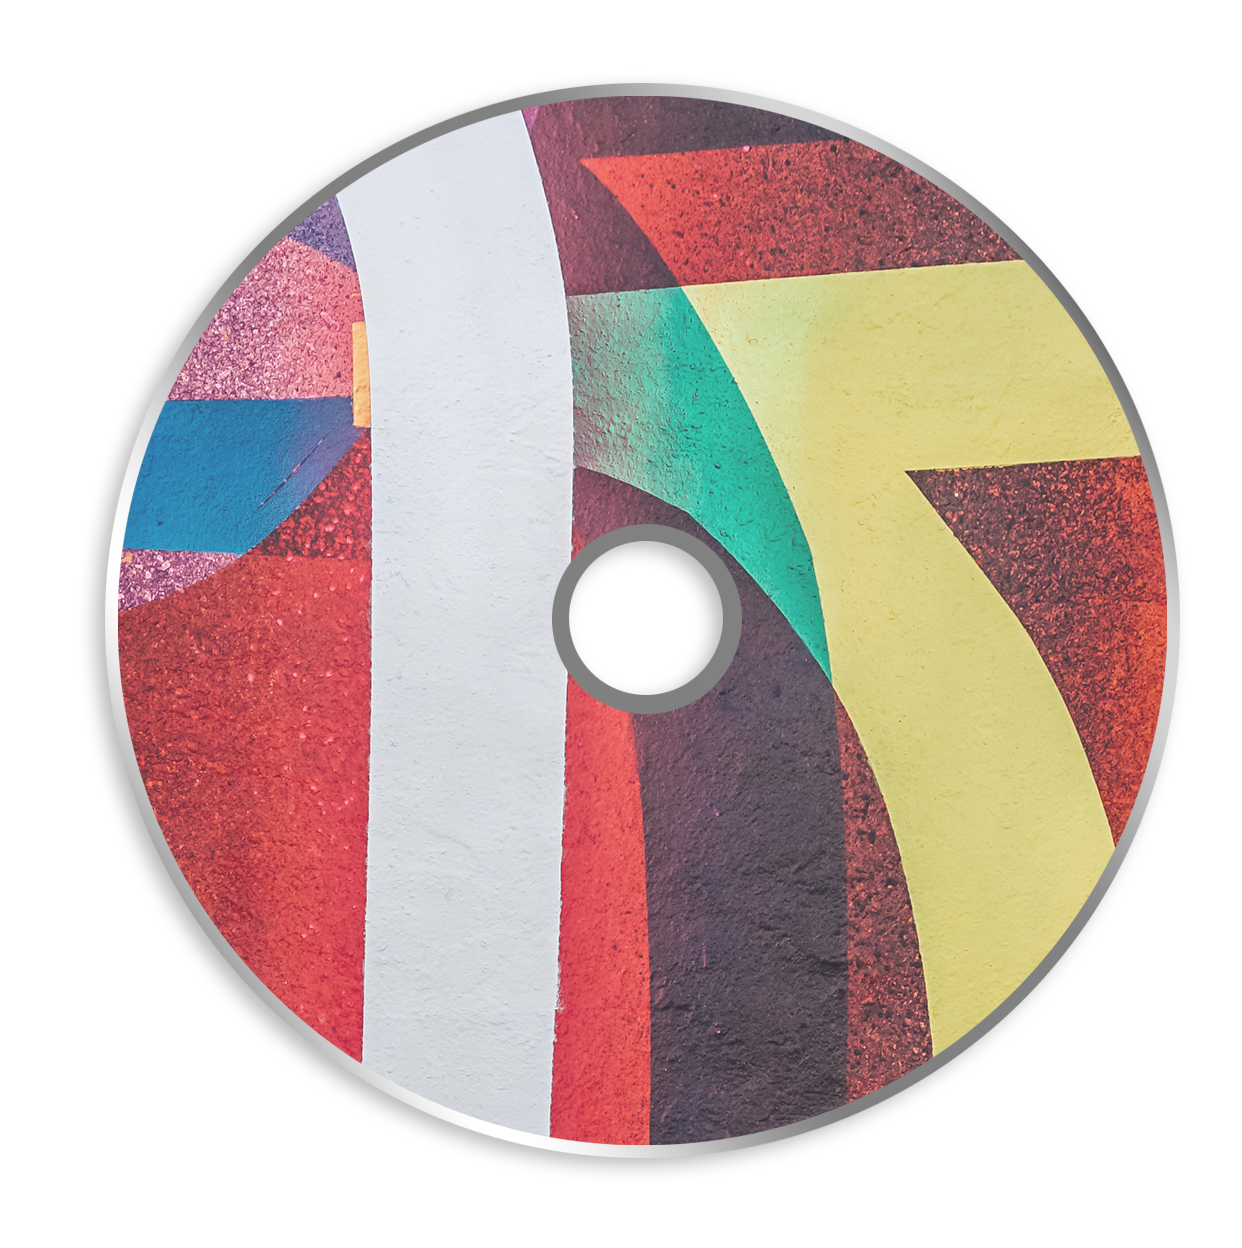 รูปภาพของ CD-Rohlinge Bedrucken Inkjet 4c + Versiegelung
